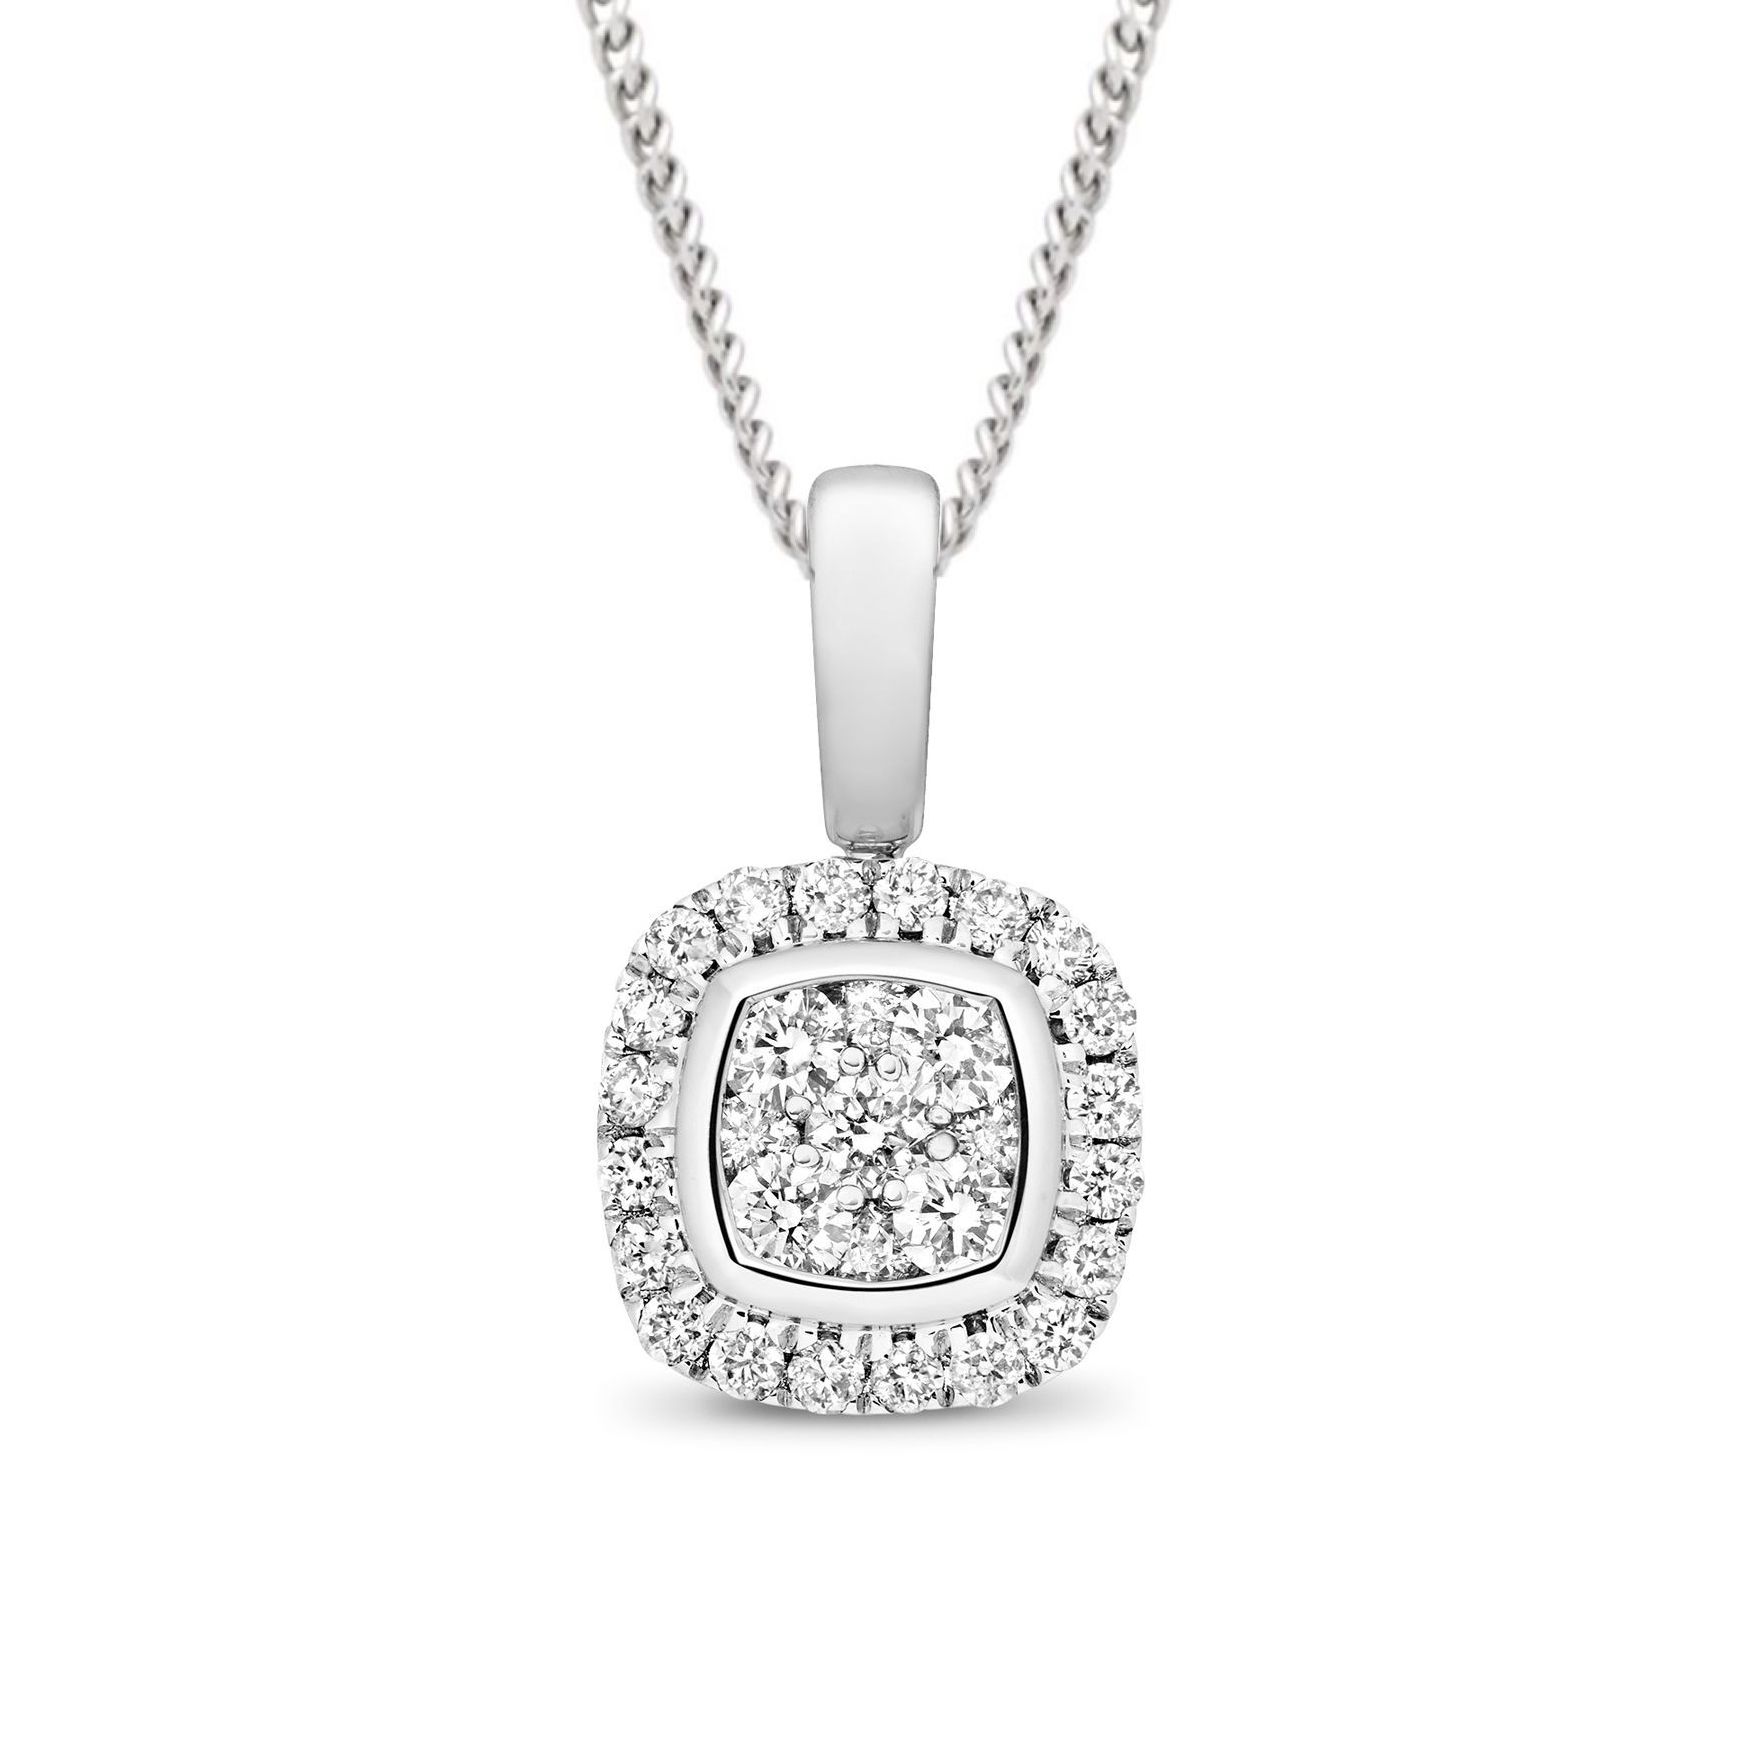 0.25 Carat Cushion Shape Cluster Solitaire Diamond Pendant Necklace for Women